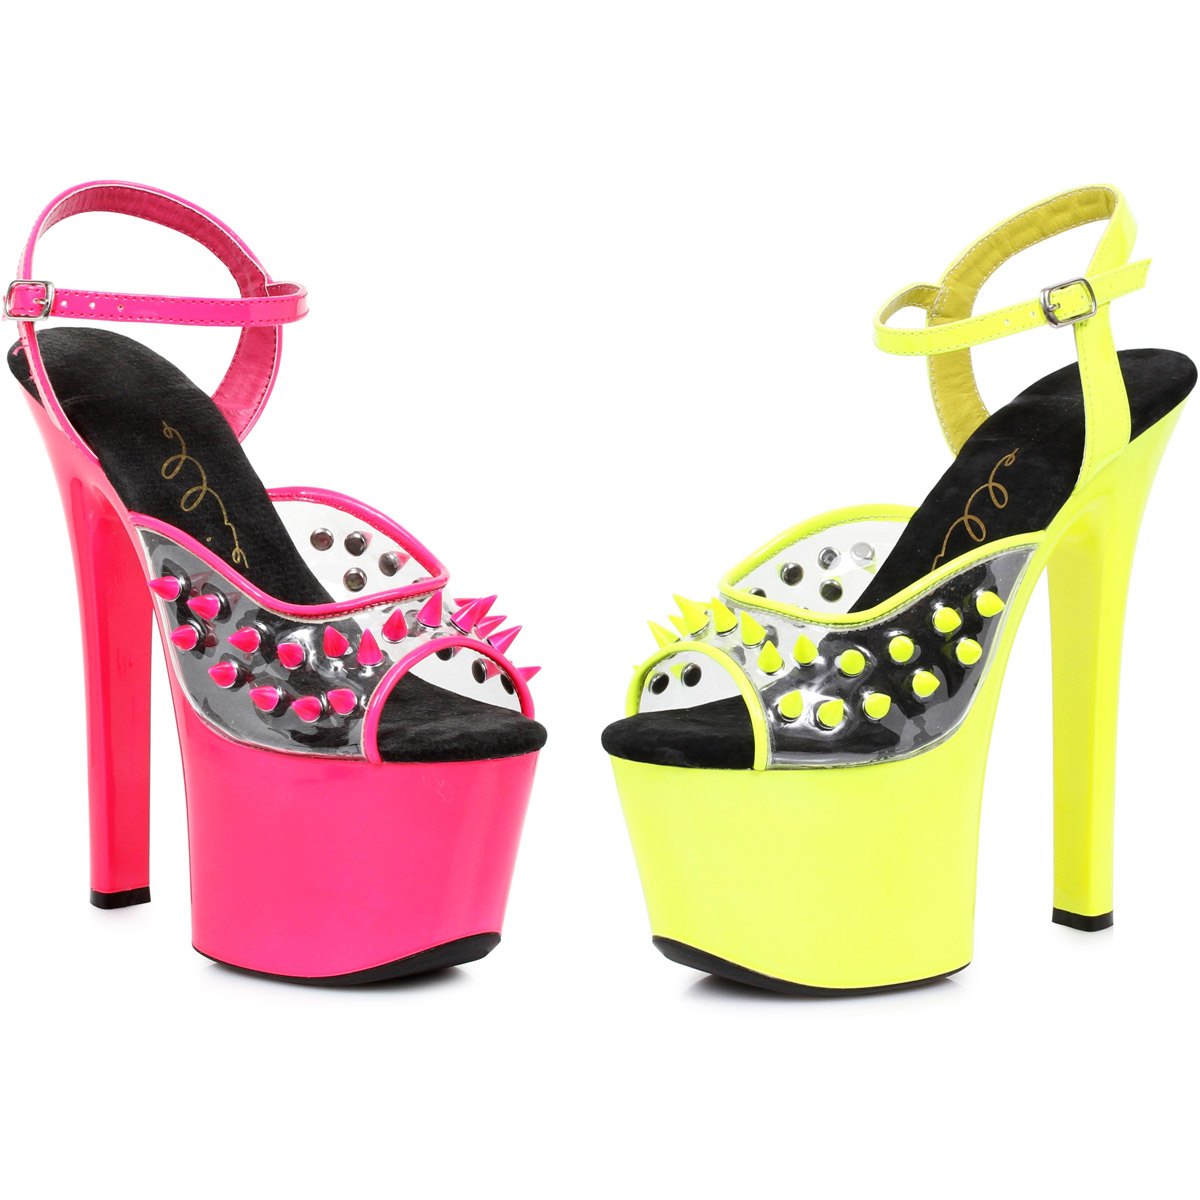 Bolsa explosión Hierbas Zapatos Ellie Spike con tacones altos para mujer adultos 711/SOLAR | eBay